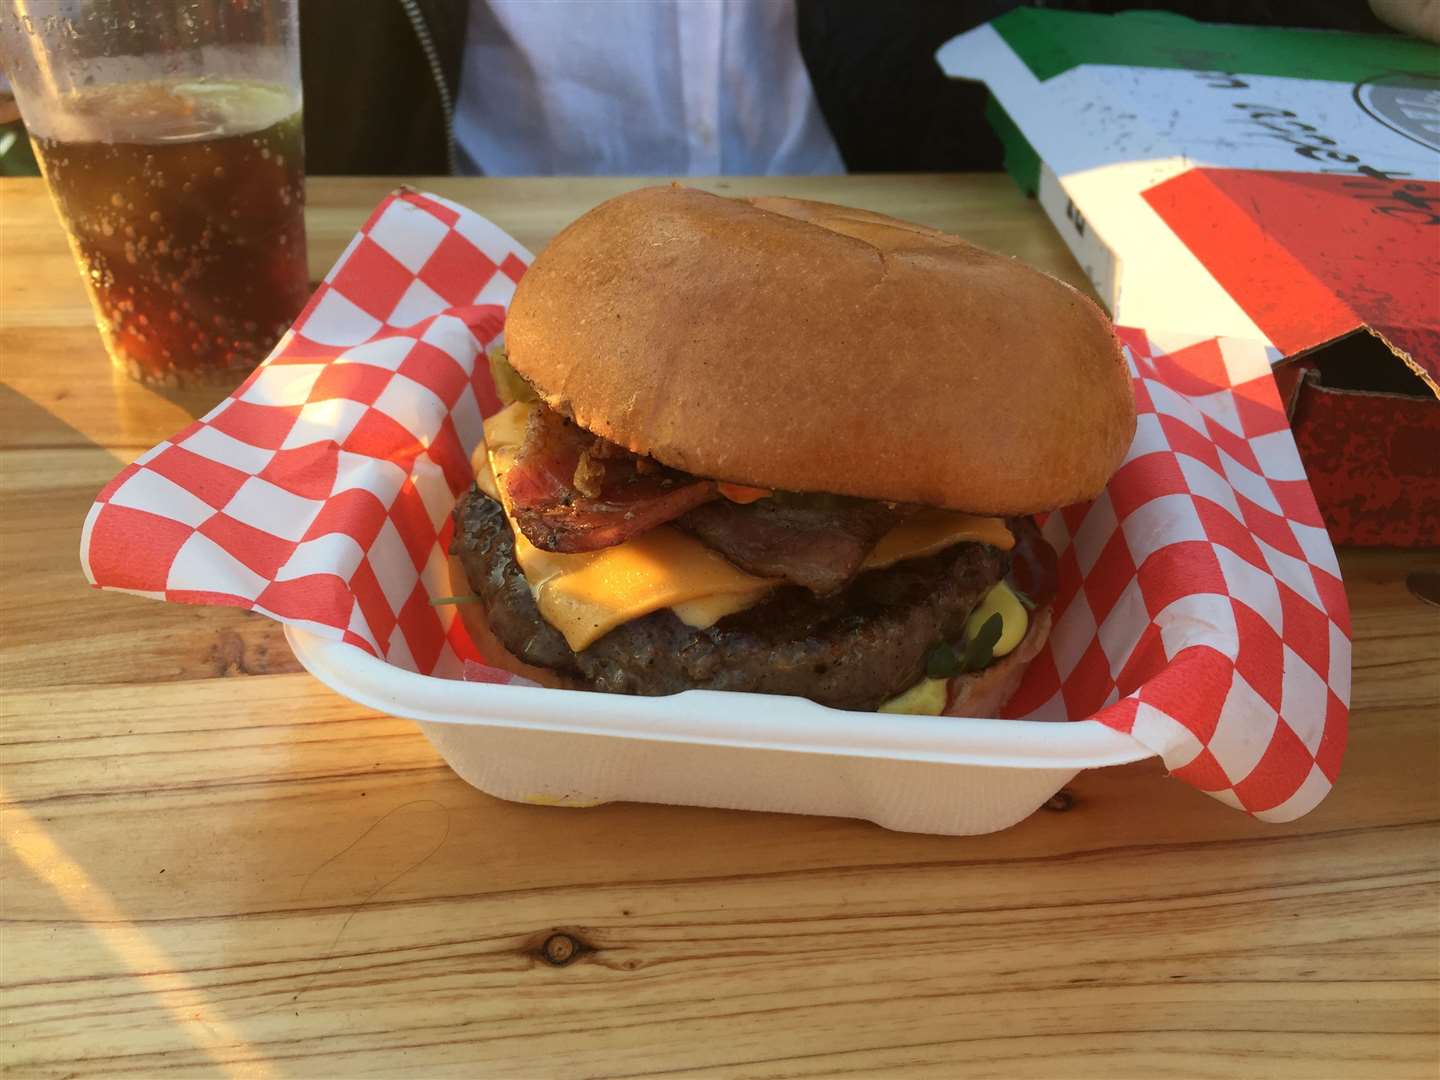 The 'rad burger' at the summer social